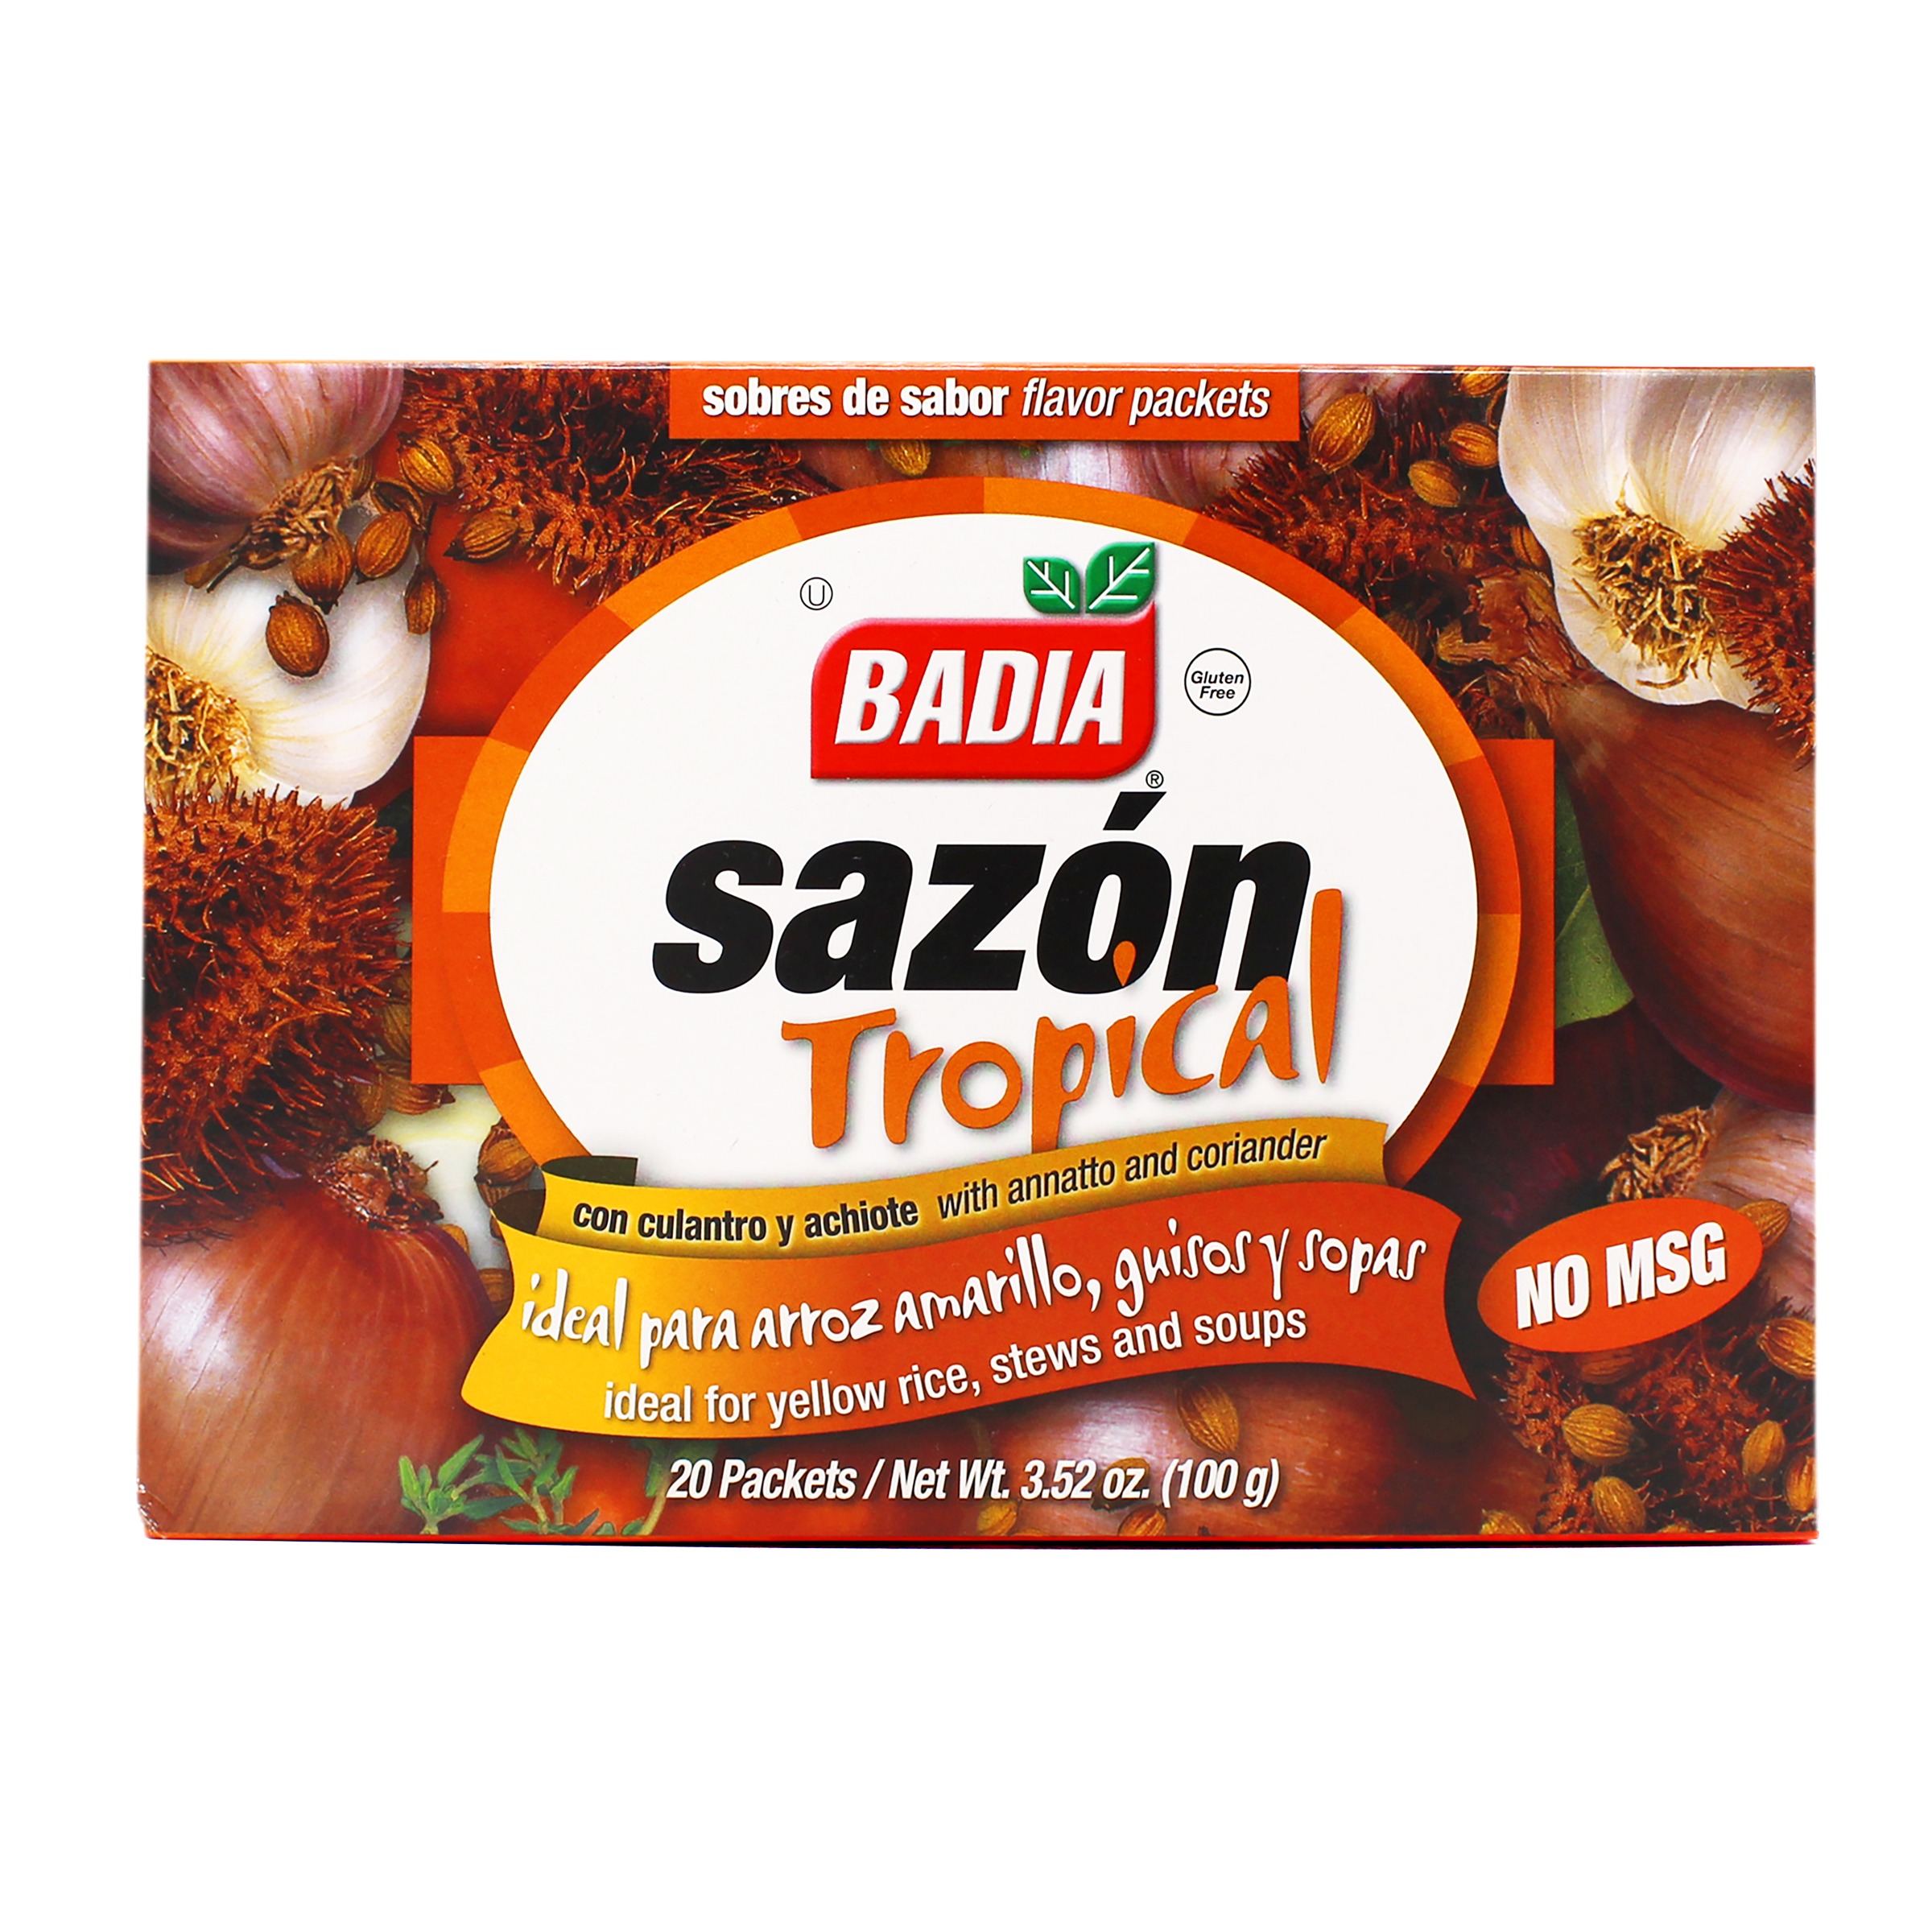 Amazing Taste® Pollo Sazonado Chicken Seasoning Shaker, 4.3 oz